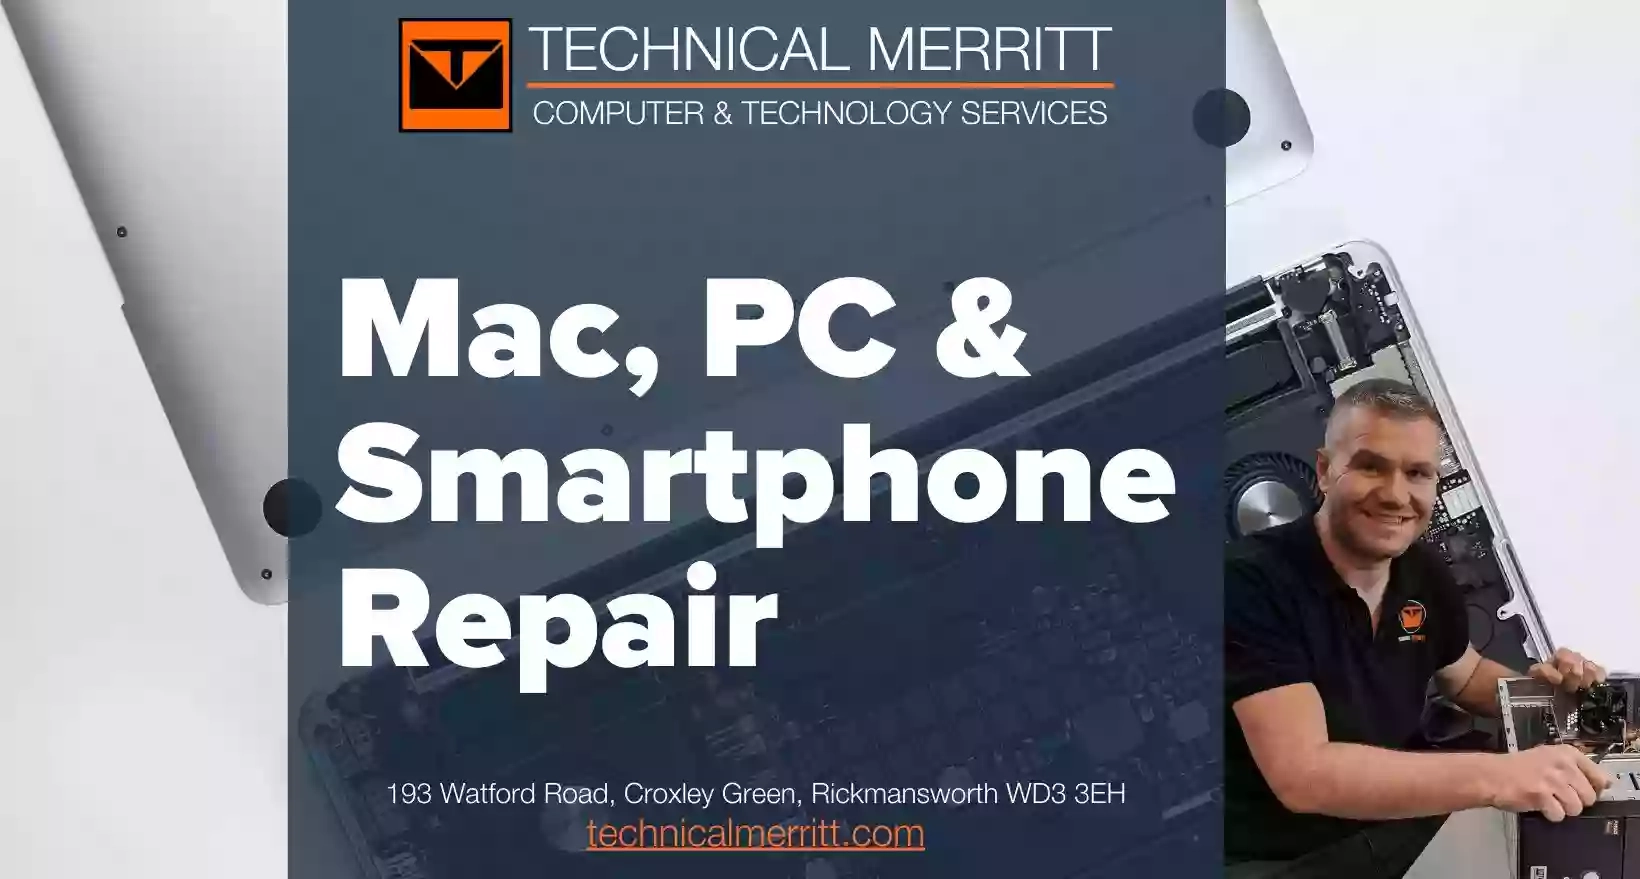 Technical Merritt - Computer Services